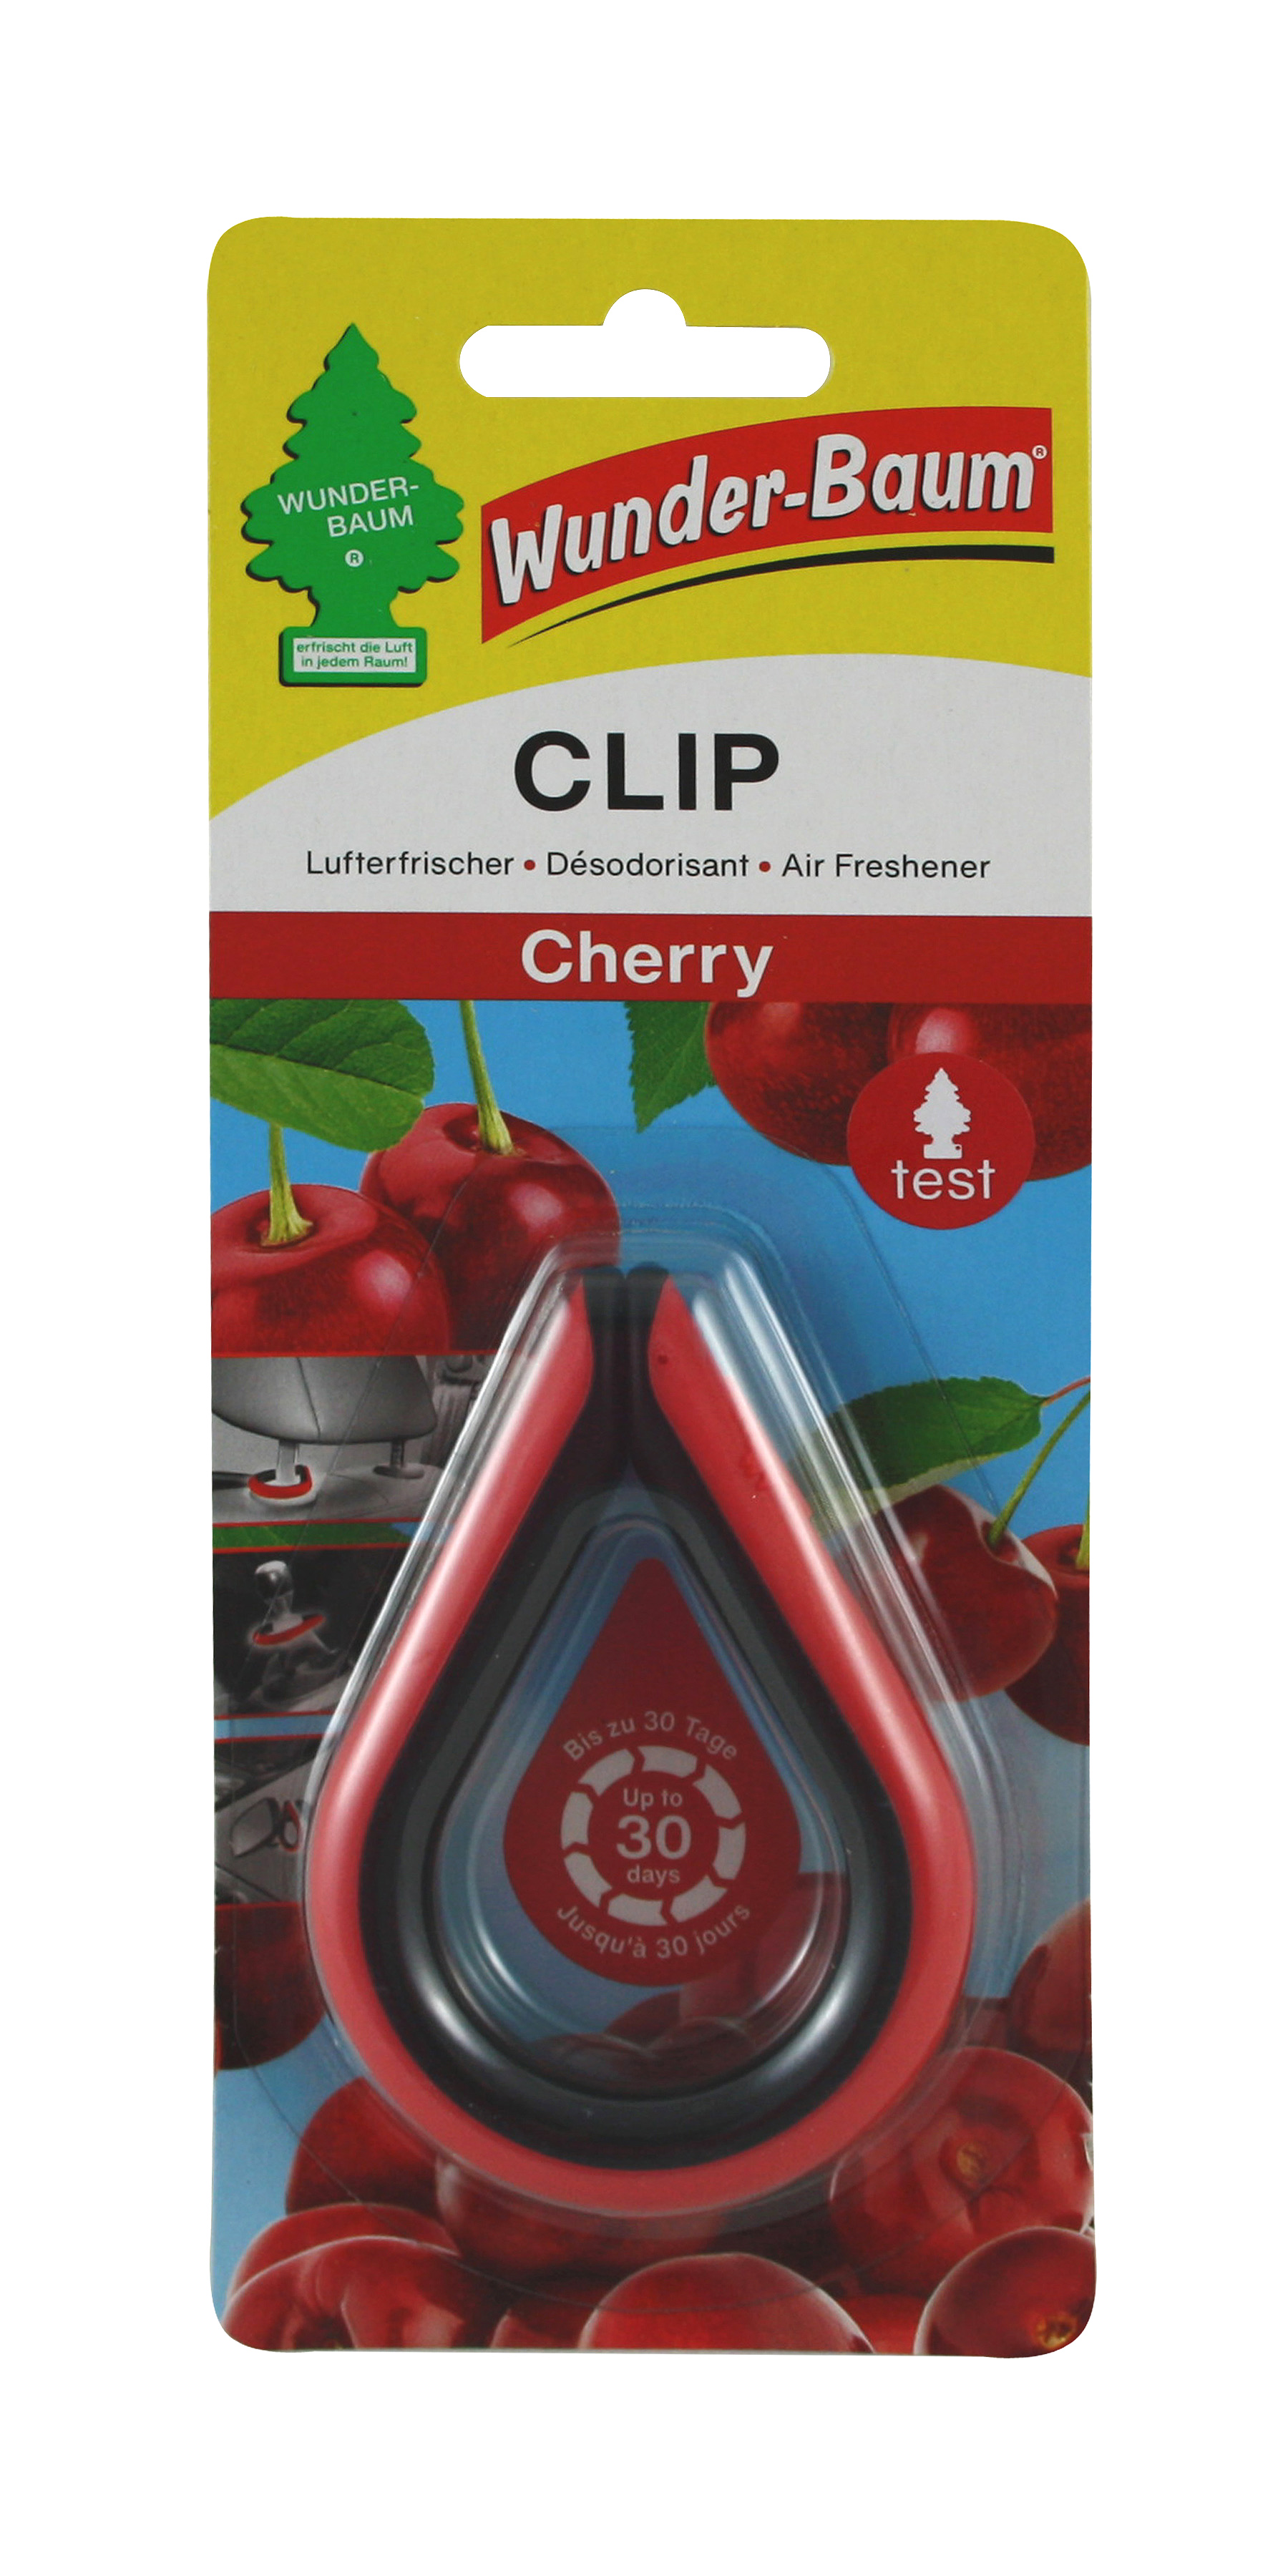 Wunderbaum Clip Cherry